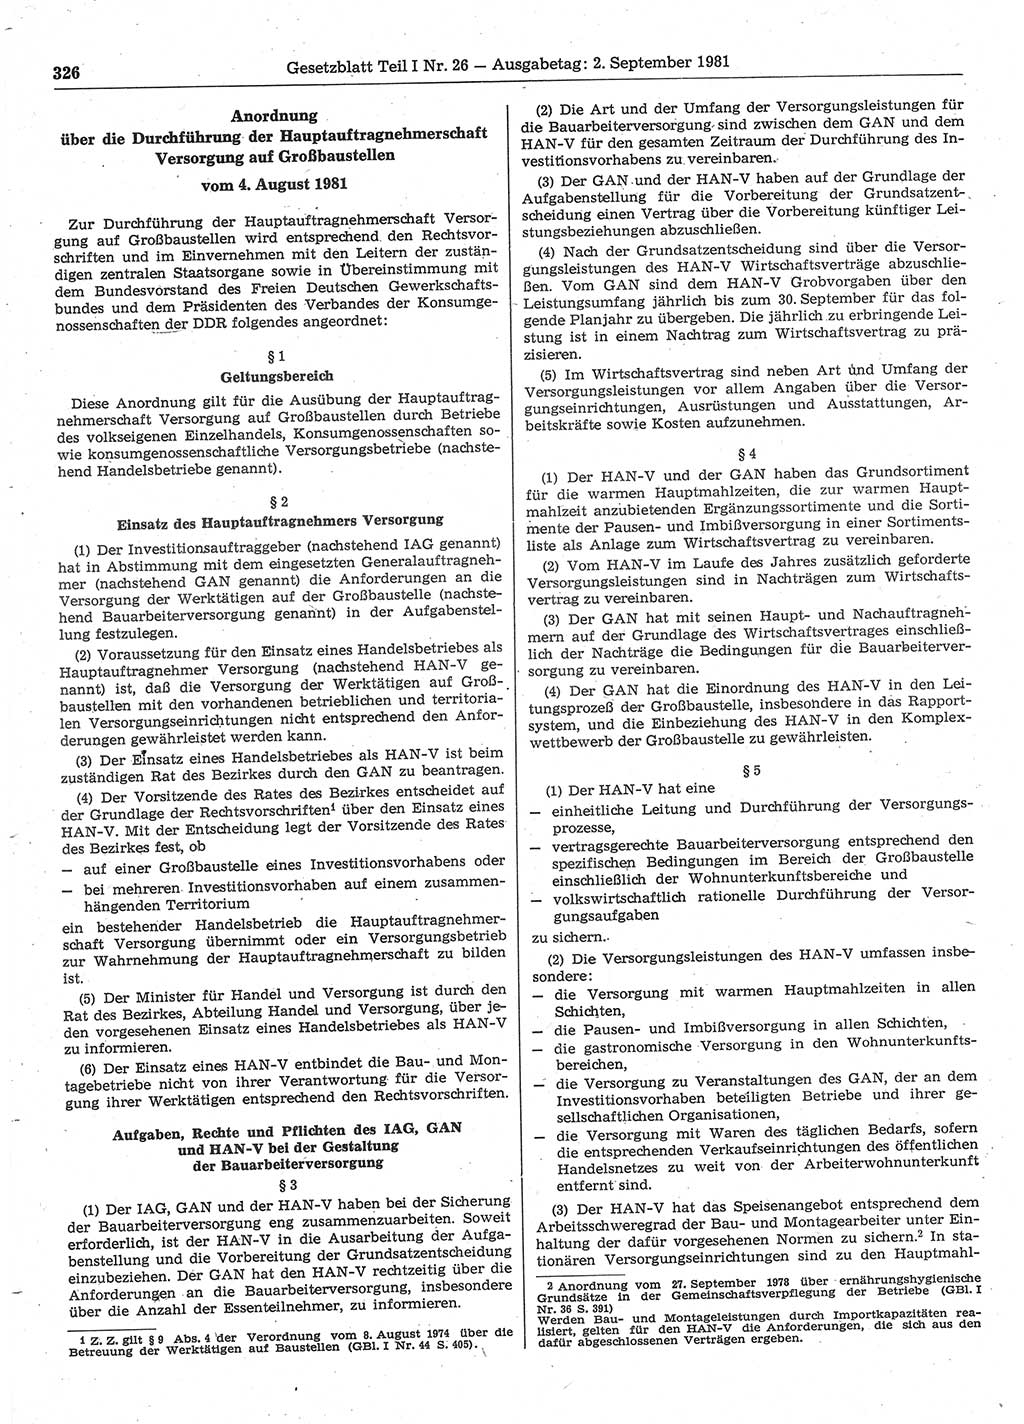 Gesetzblatt (GBl.) der Deutschen Demokratischen Republik (DDR) Teil Ⅰ 1981, Seite 326 (GBl. DDR Ⅰ 1981, S. 326)